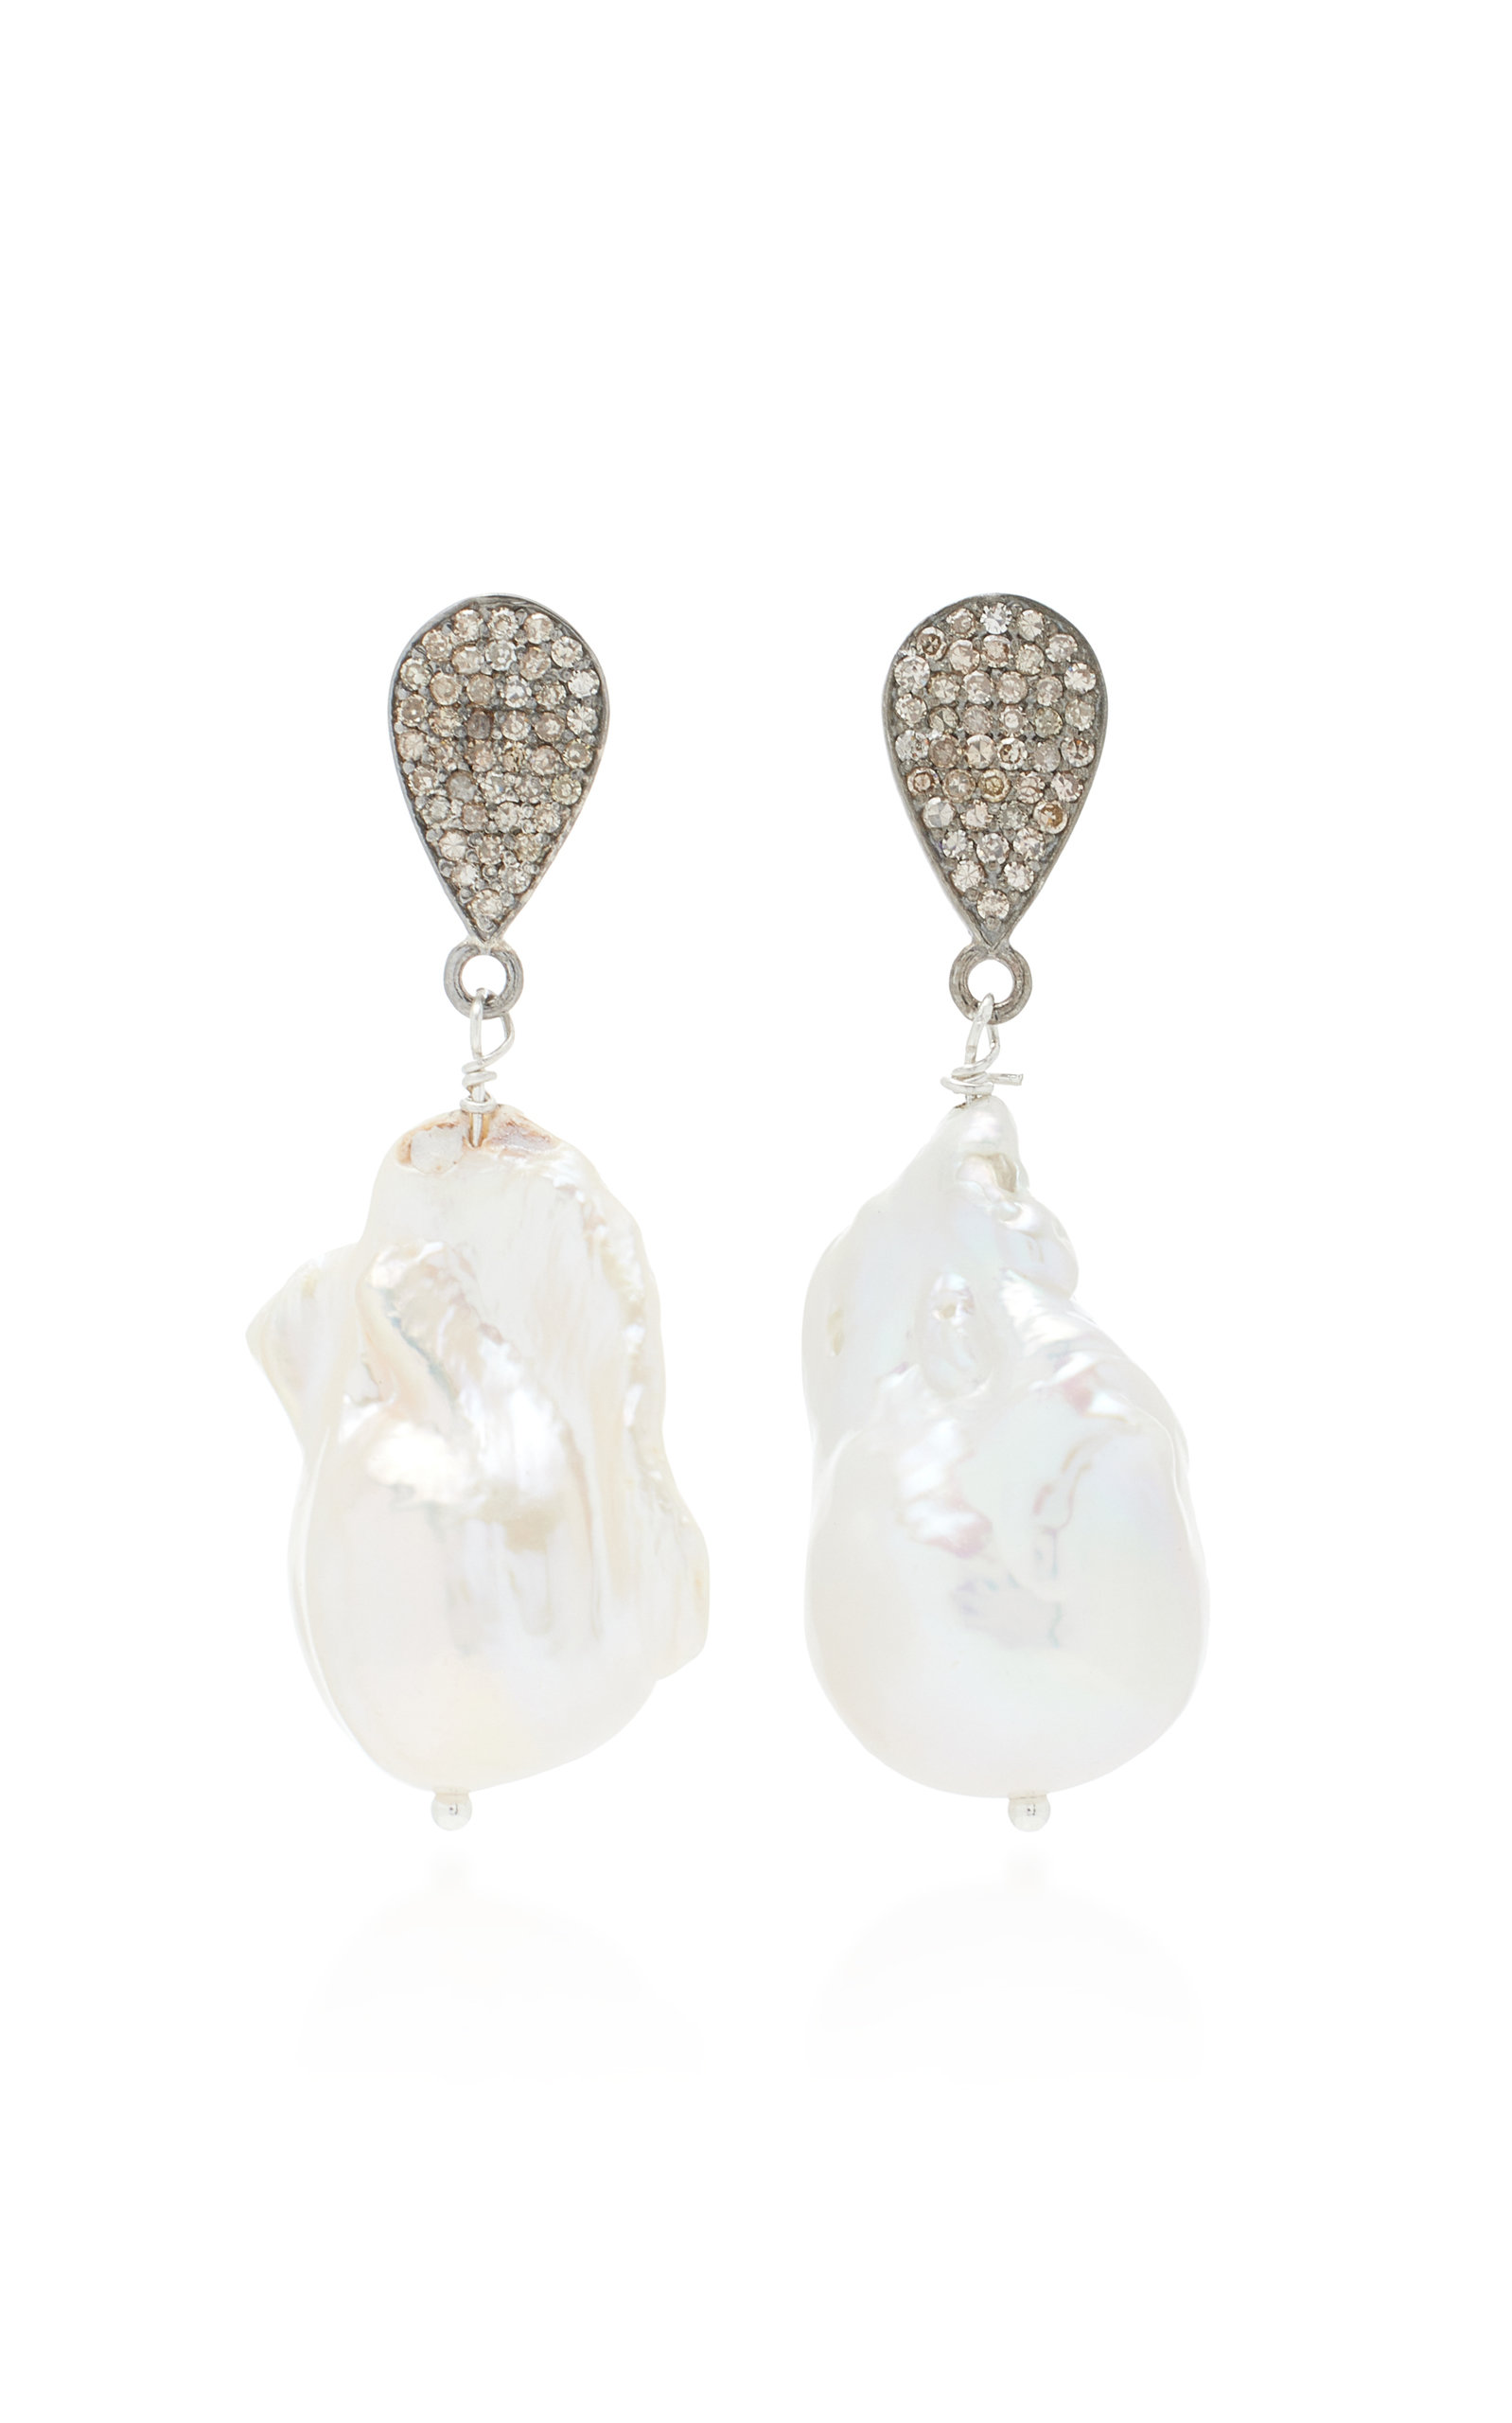 Joie DiGiovanni Women's Sterling Silver Diamond; Pearl Earrings